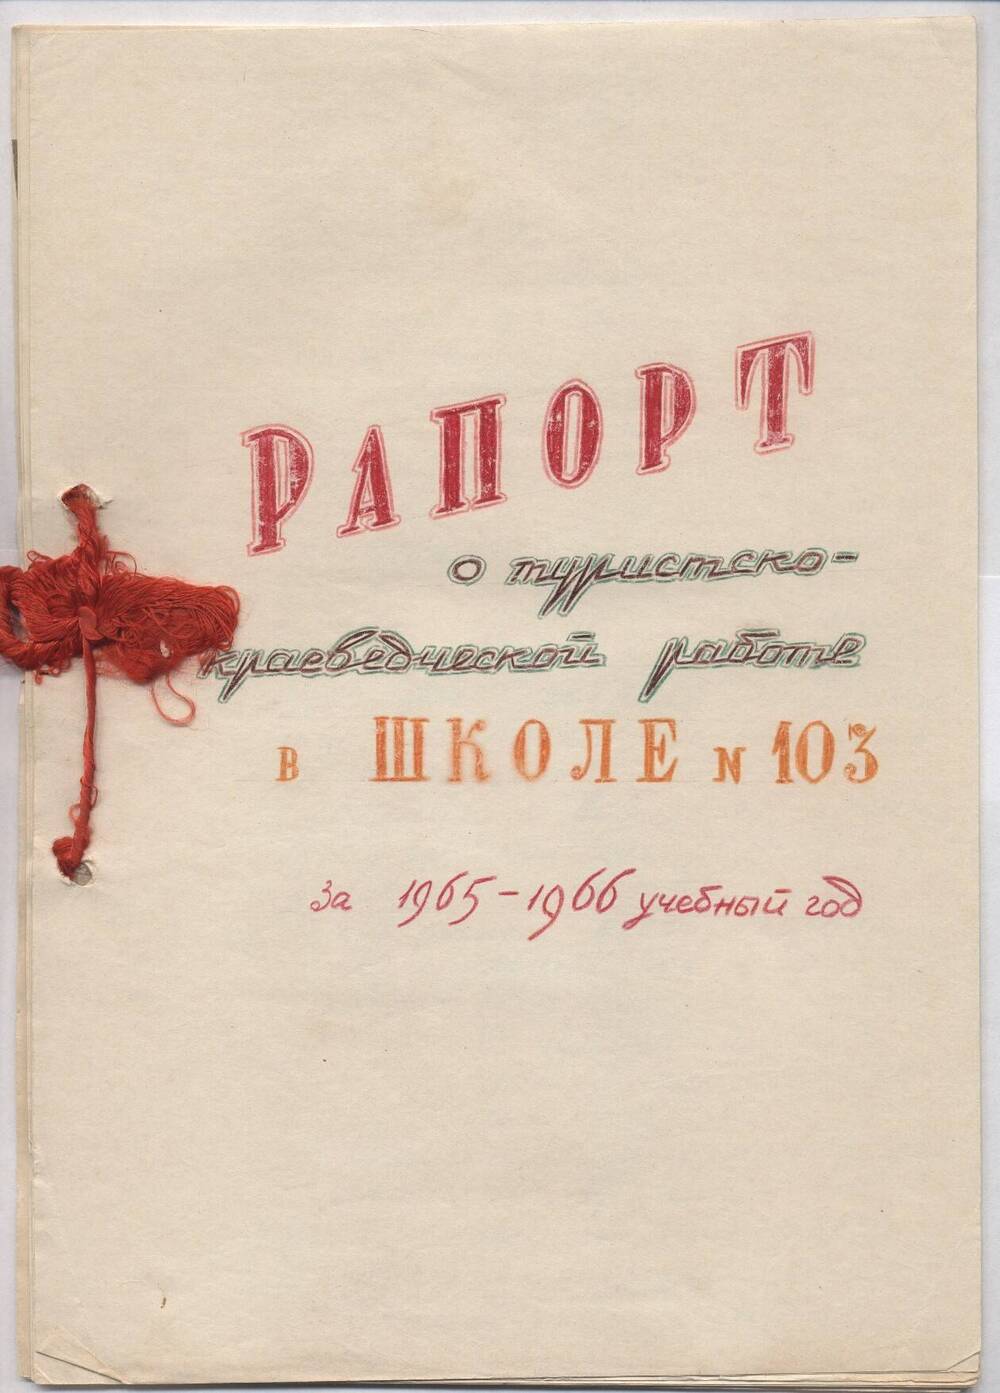 Рапорт о туристско-краеведческой работе в школе № 103 за 1965-1966 учебный год.